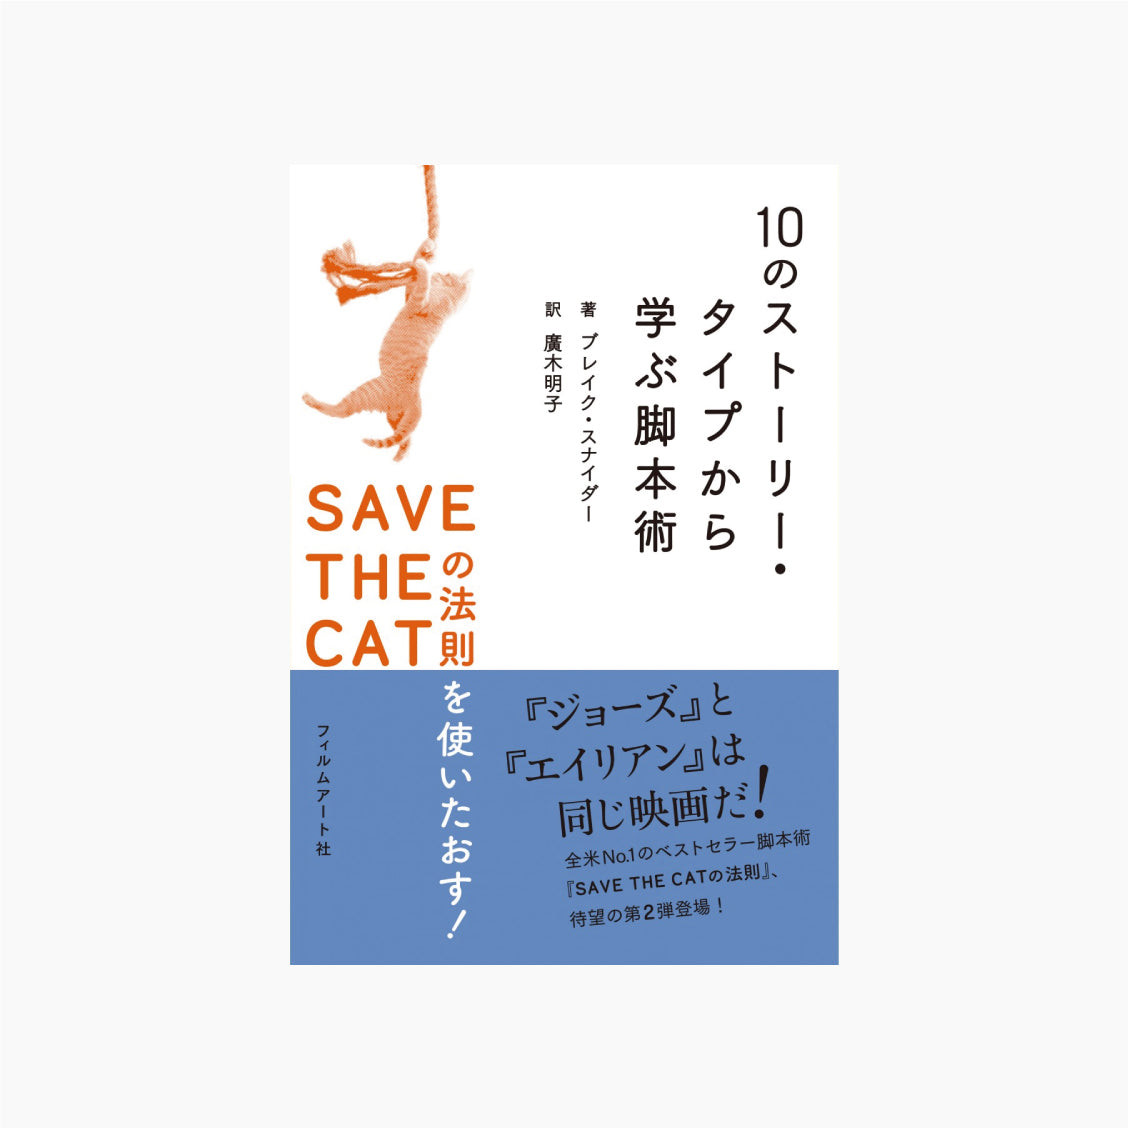 10のストーリー・タイプから学ぶ脚本術 SAVE THE CATの法則を使いたおす！